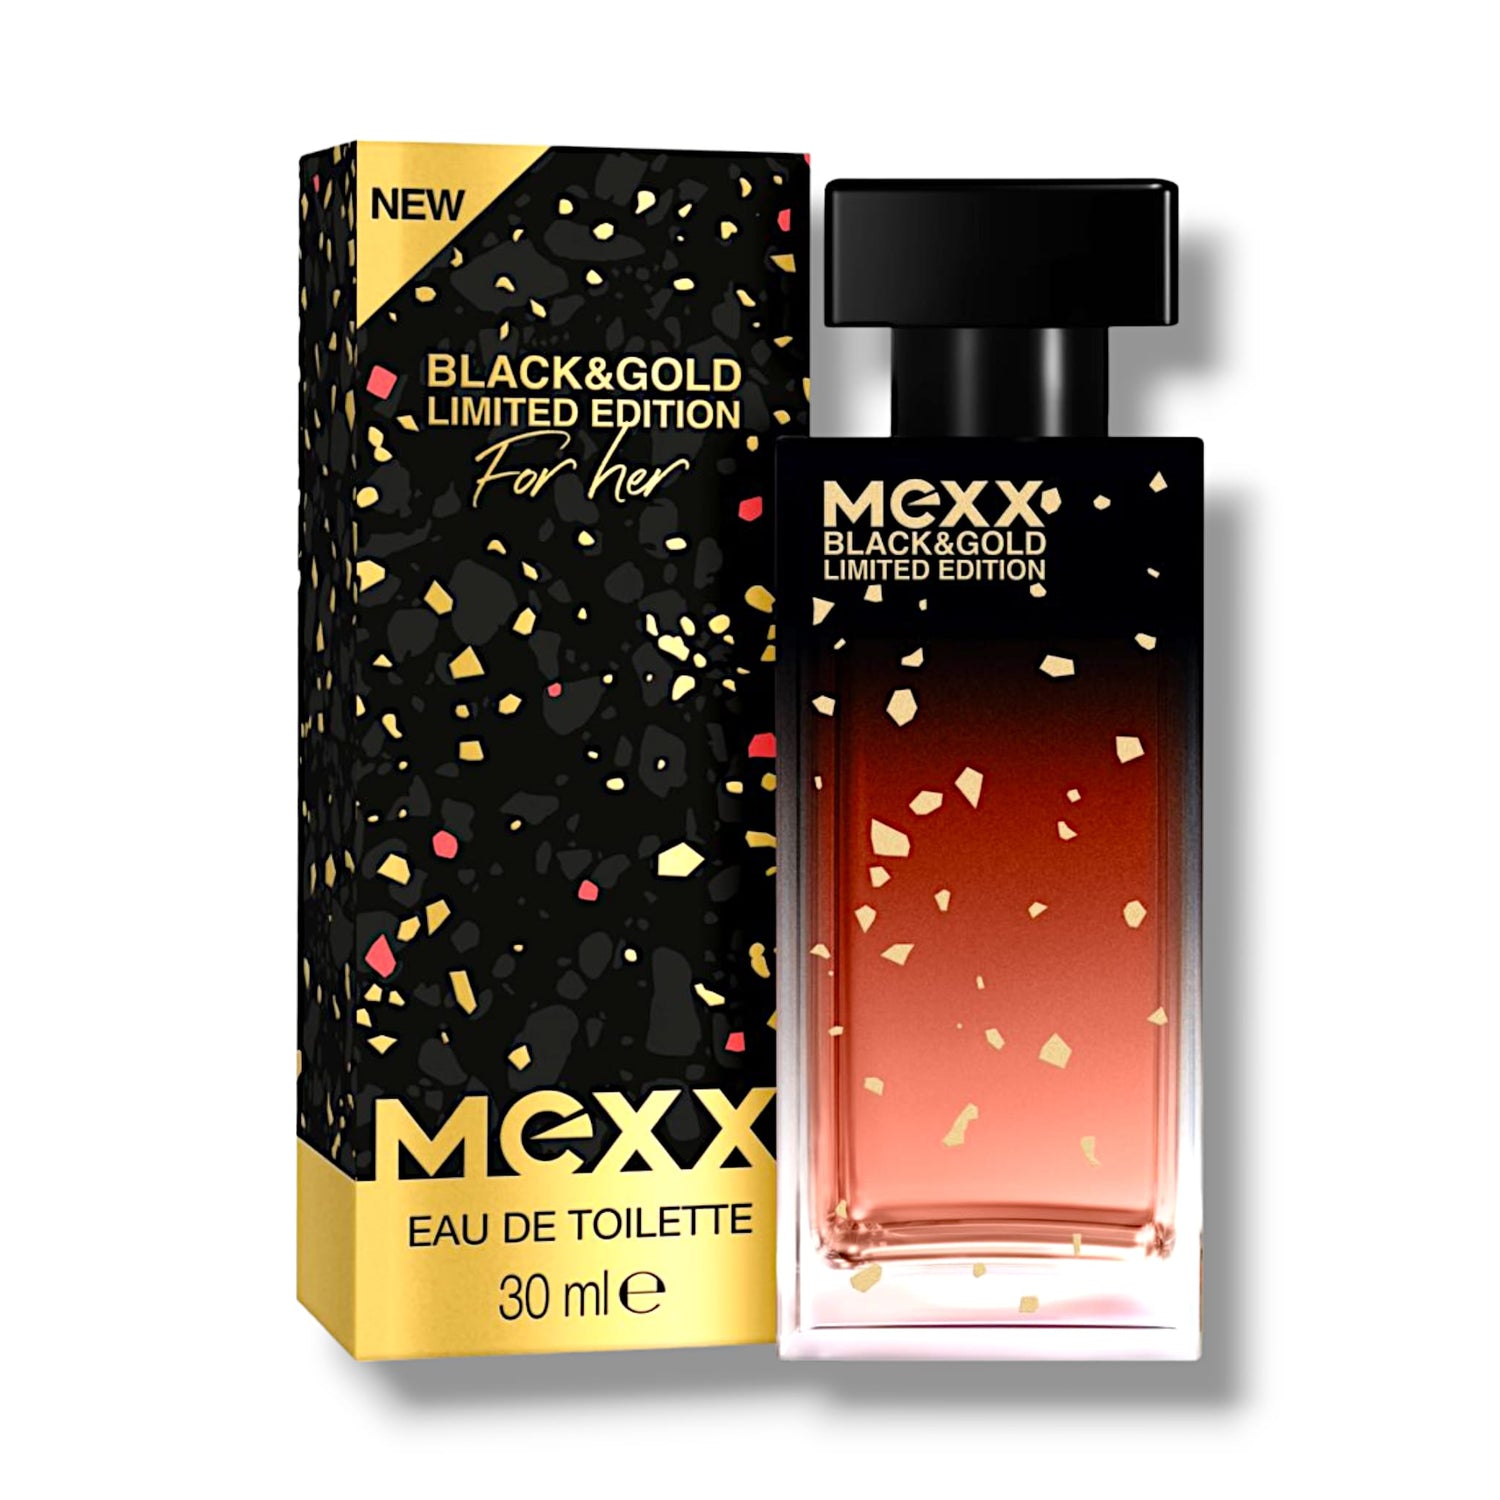 Mexx Black & Gold Limited Edition Woman Eau de Toilette 30ml